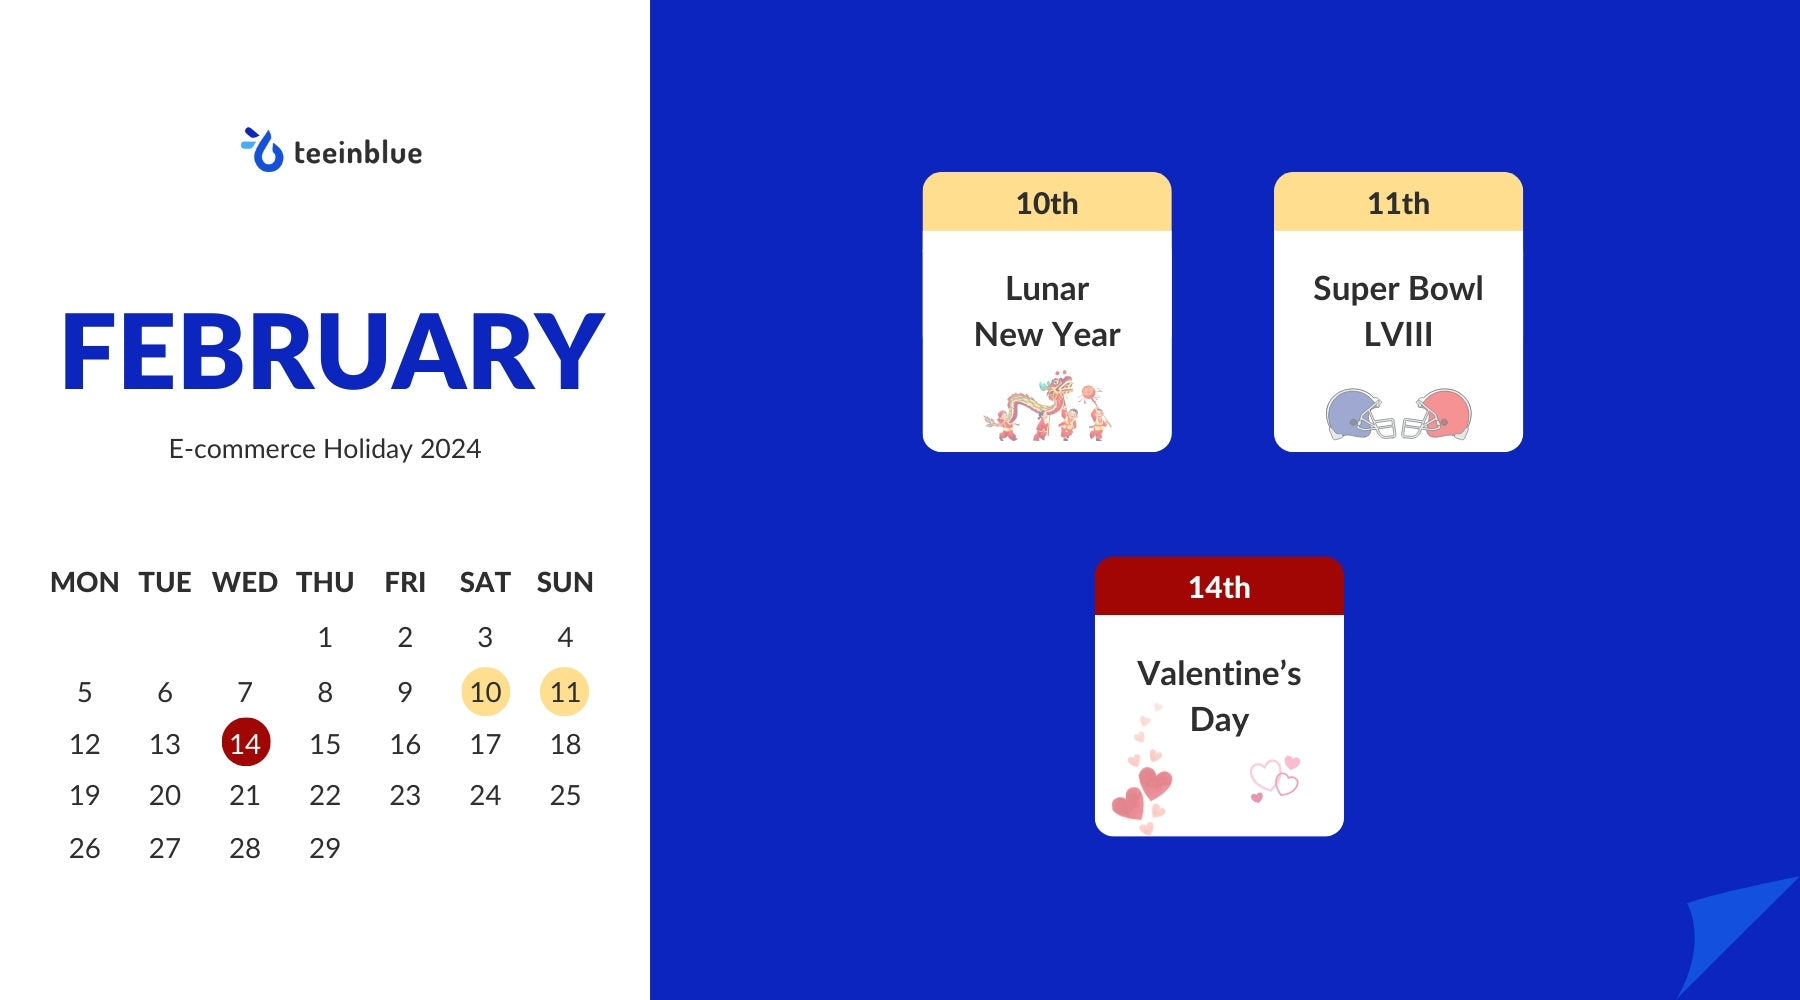 ecommerce holiday february 2024